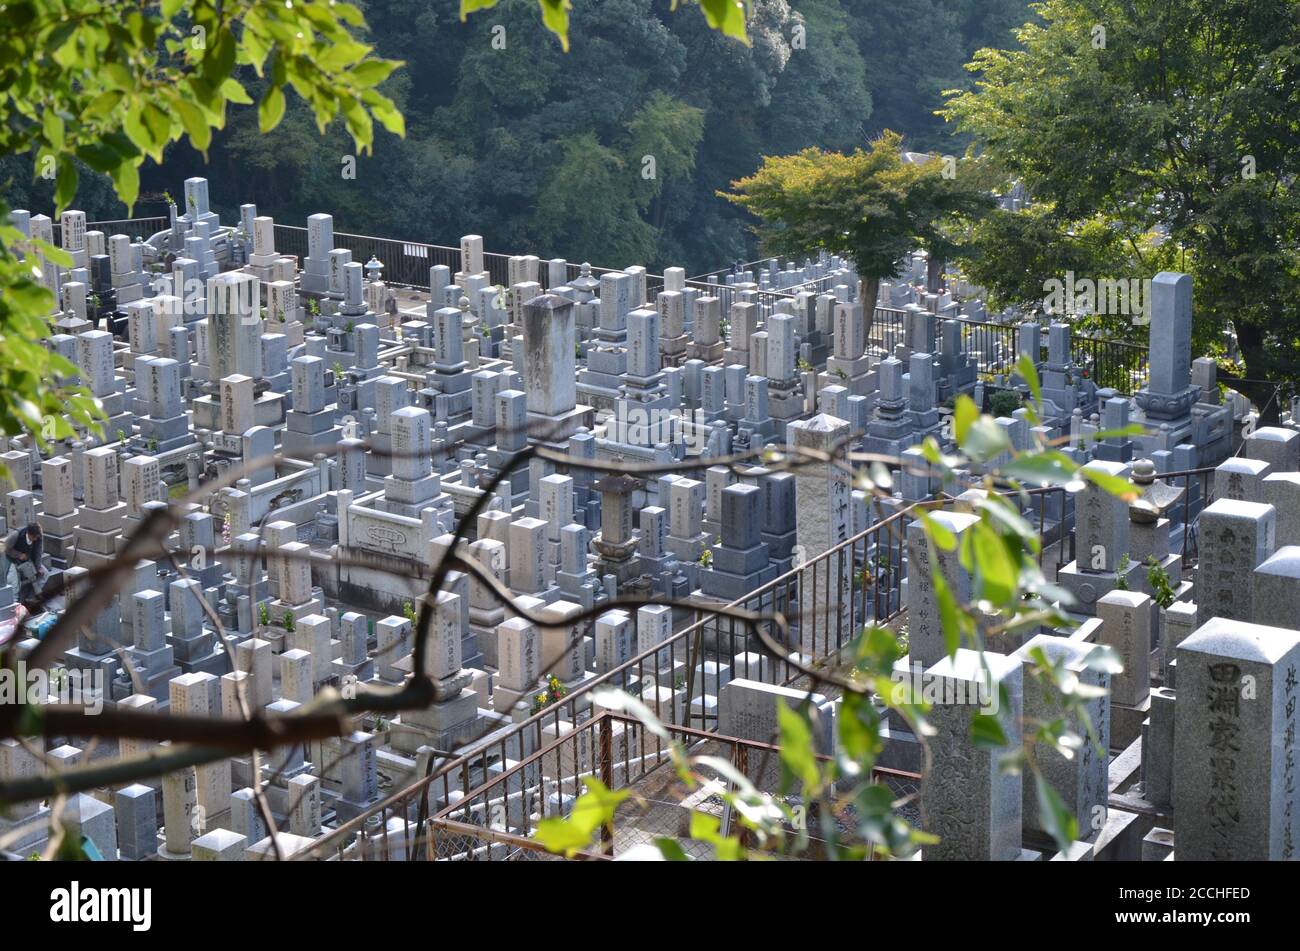 Tombe storiche presso il cimitero di Nishi Otani nel distretto di Higashiyama, Kyoto, Giappone. Foto Stock